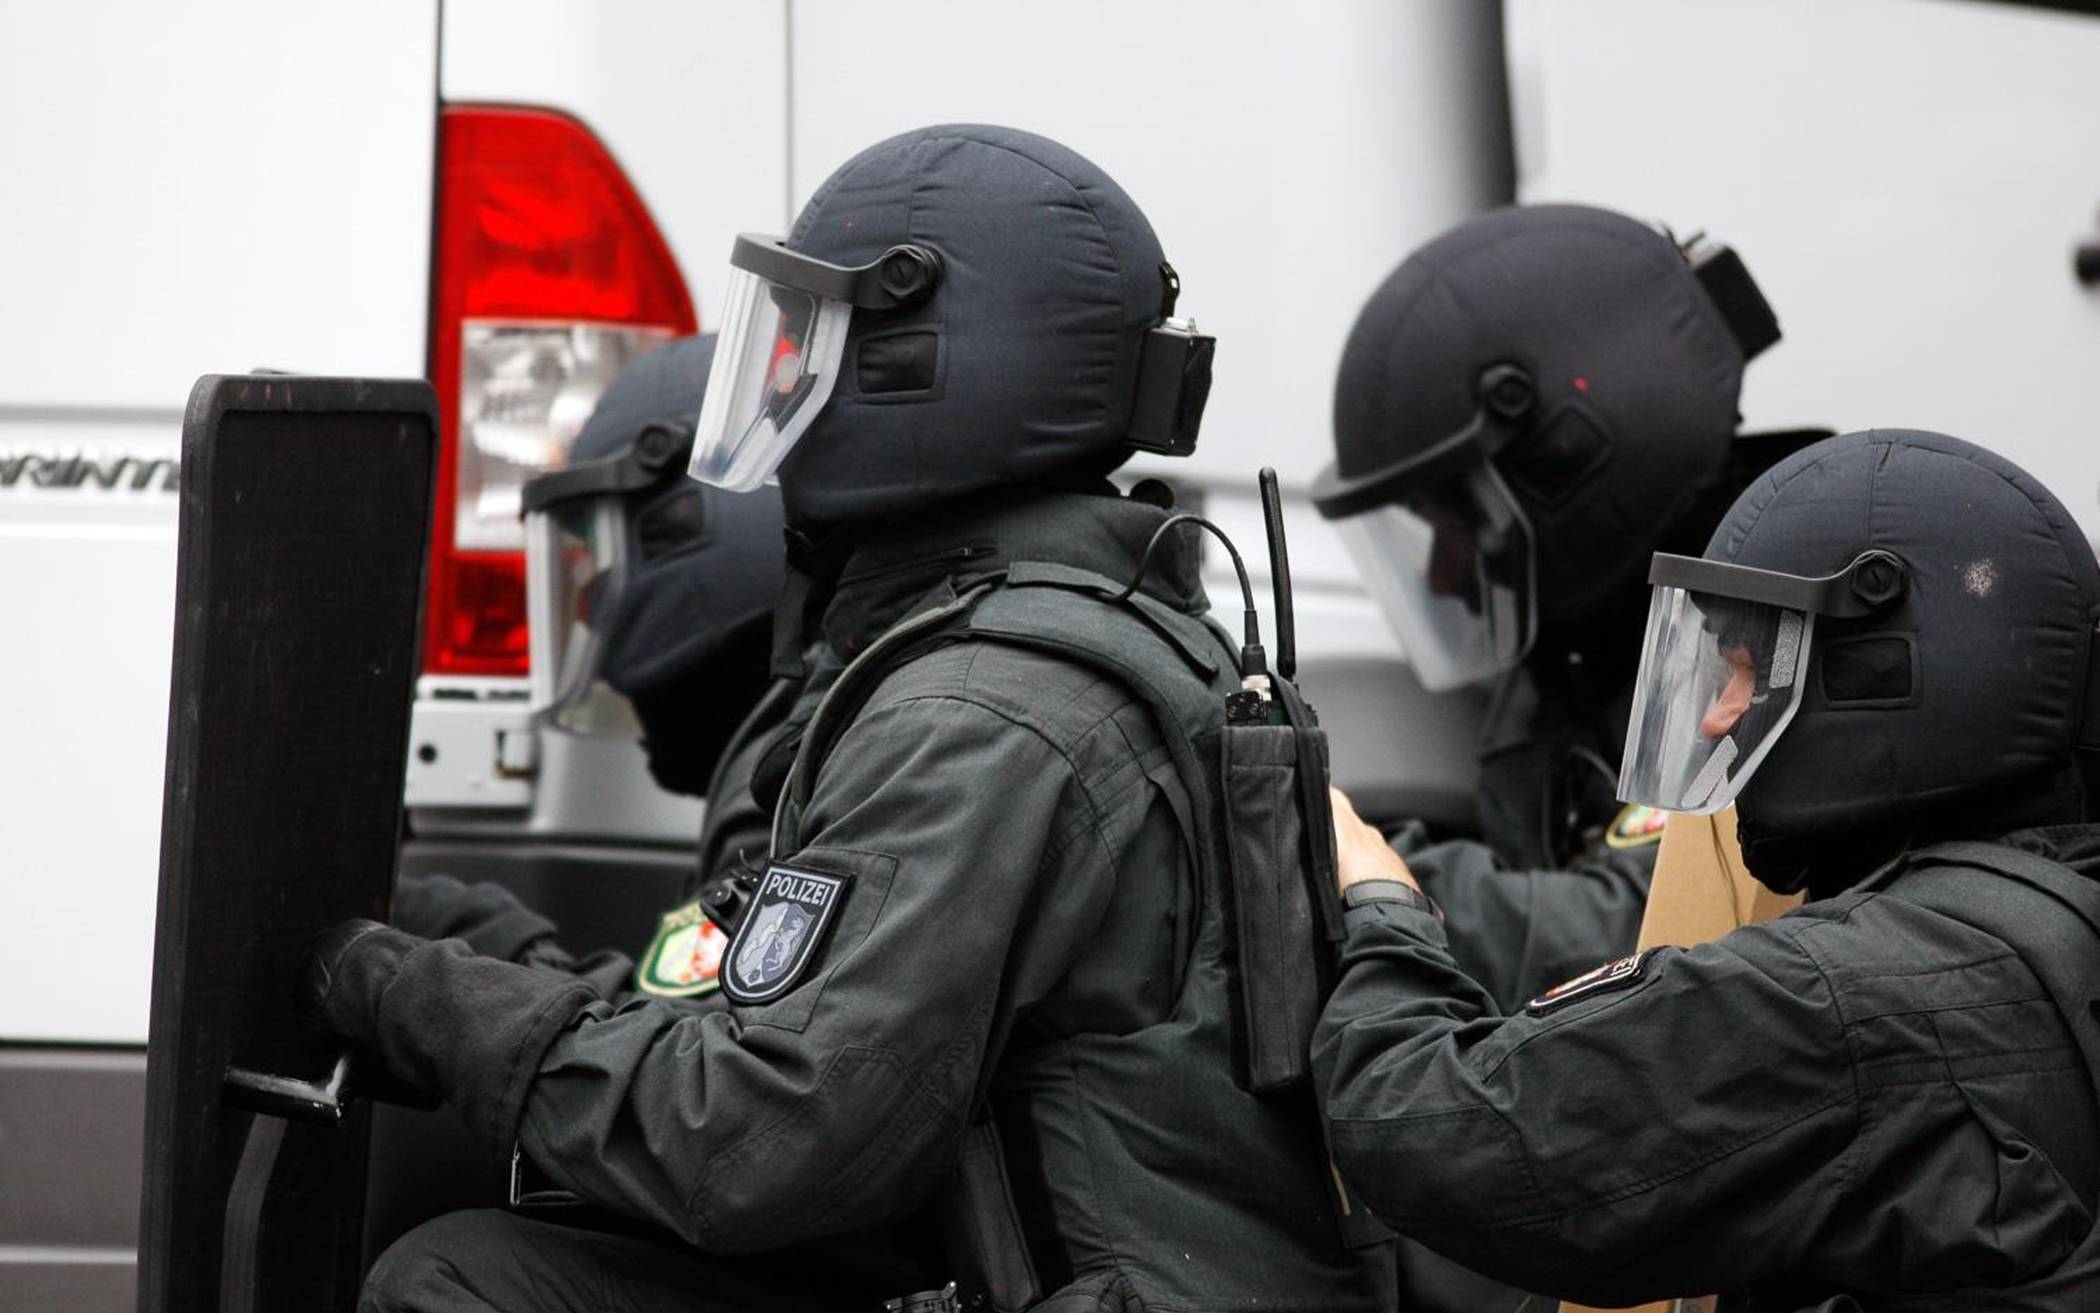 Durchsuchungsmaßnahmen mit Spezialeinheiten am frühen Morgen: Drogen, Waffen und Bargeld sicher gestellt